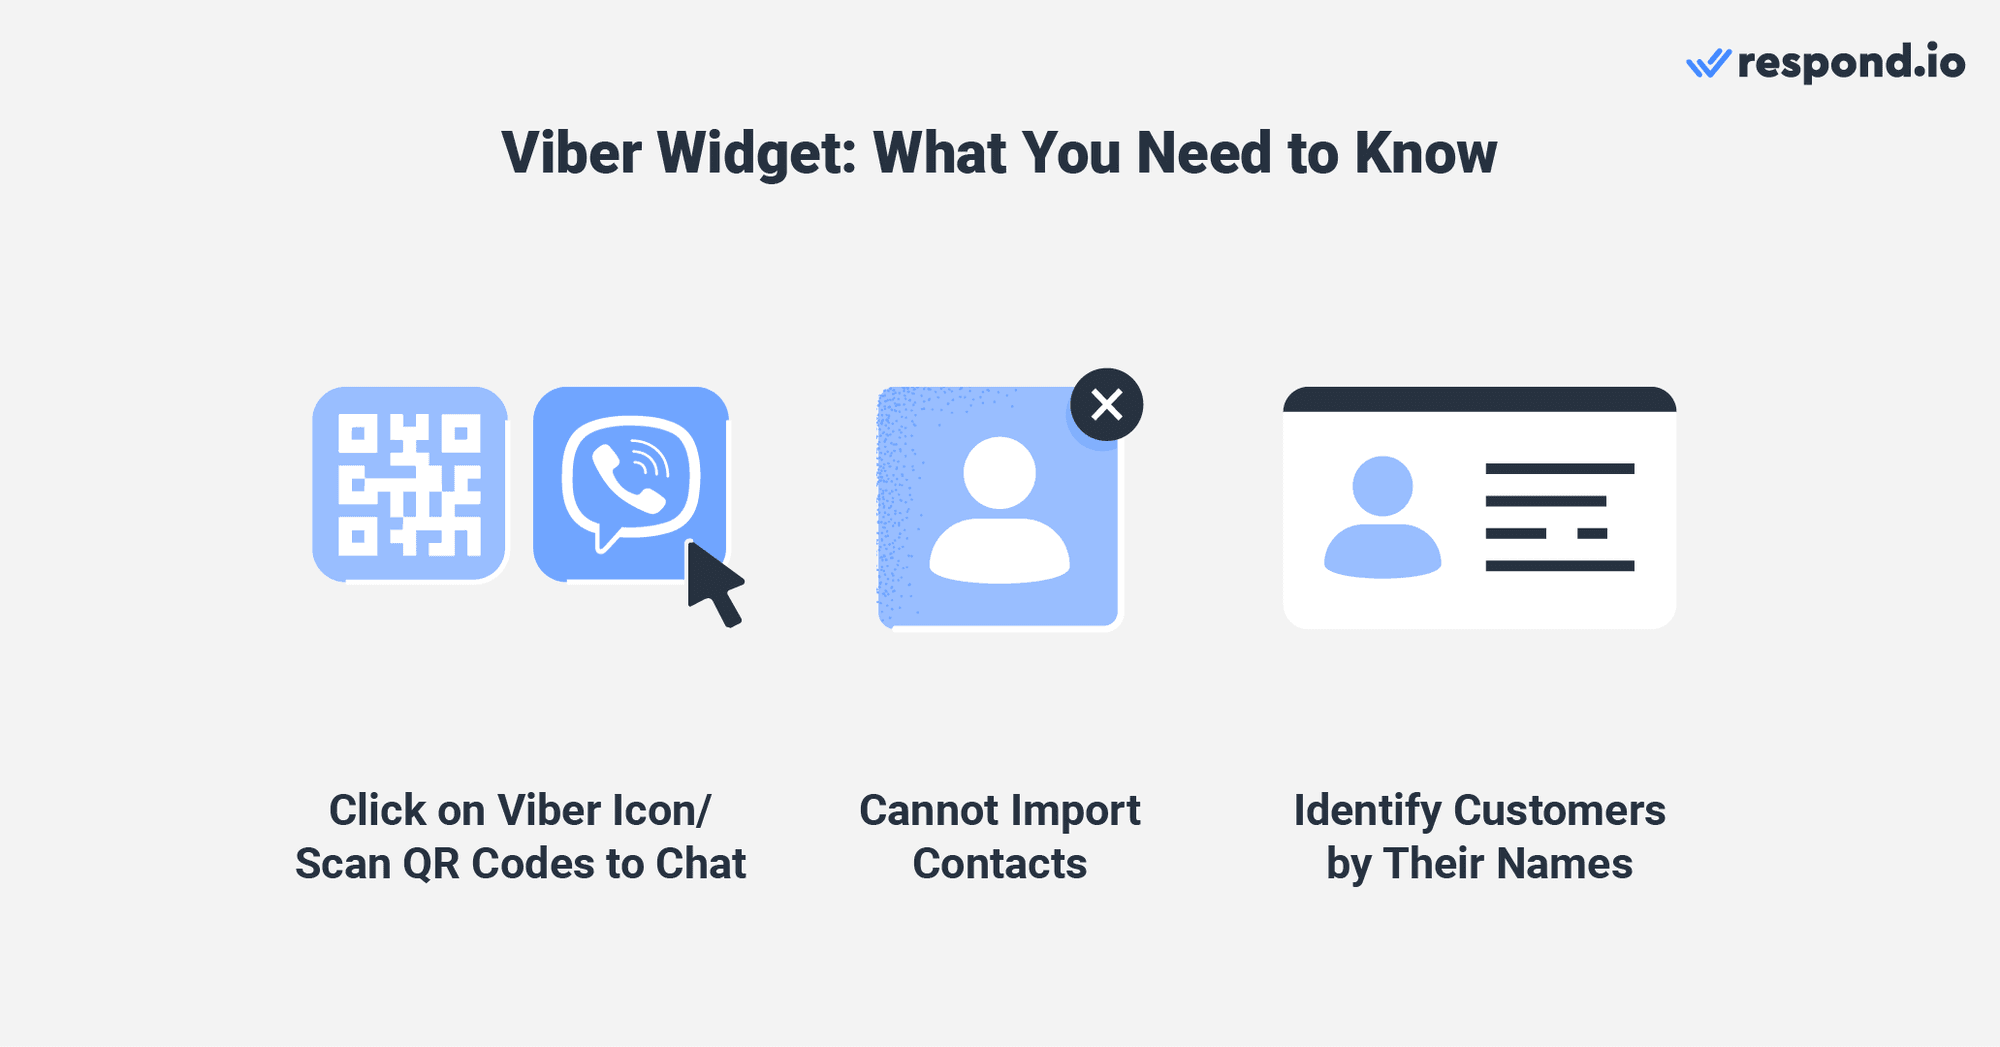 นี่คือรูปภาพที่อธิบายสิ่งที่คุณต้องรู้เกี่ยวกับเว็บ viber วิด เจ็ต คุณสามารถคลิกที่ viber ไอคอนหรือสแกนรหัส QR เพื่อเริ่มต้น viber แชทออนไลน์ อย่างไรก็ตาม คุณไม่สามารถนําเข้าผู้ติดต่อไปยังแชทได้ viber ออนไลน์ เพื่อ viber แชทออนไลน์คุณสามารถระบุลูกค้าได้ด้วยชื่อของพวกเขาเท่านั้น